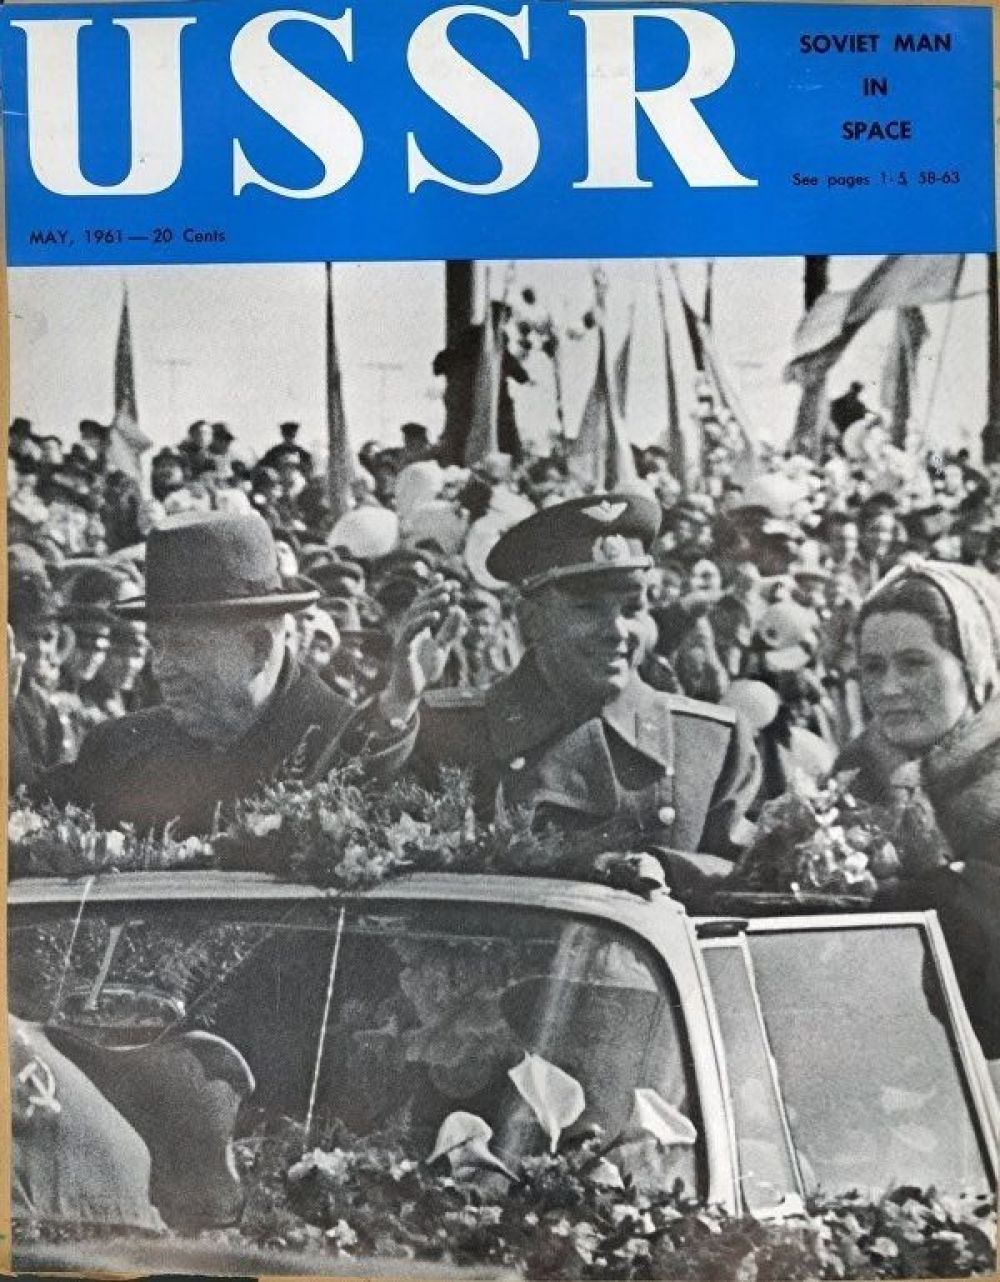 Фотография торжественной встречи космонавта после полёта на обложке журнала USSR.